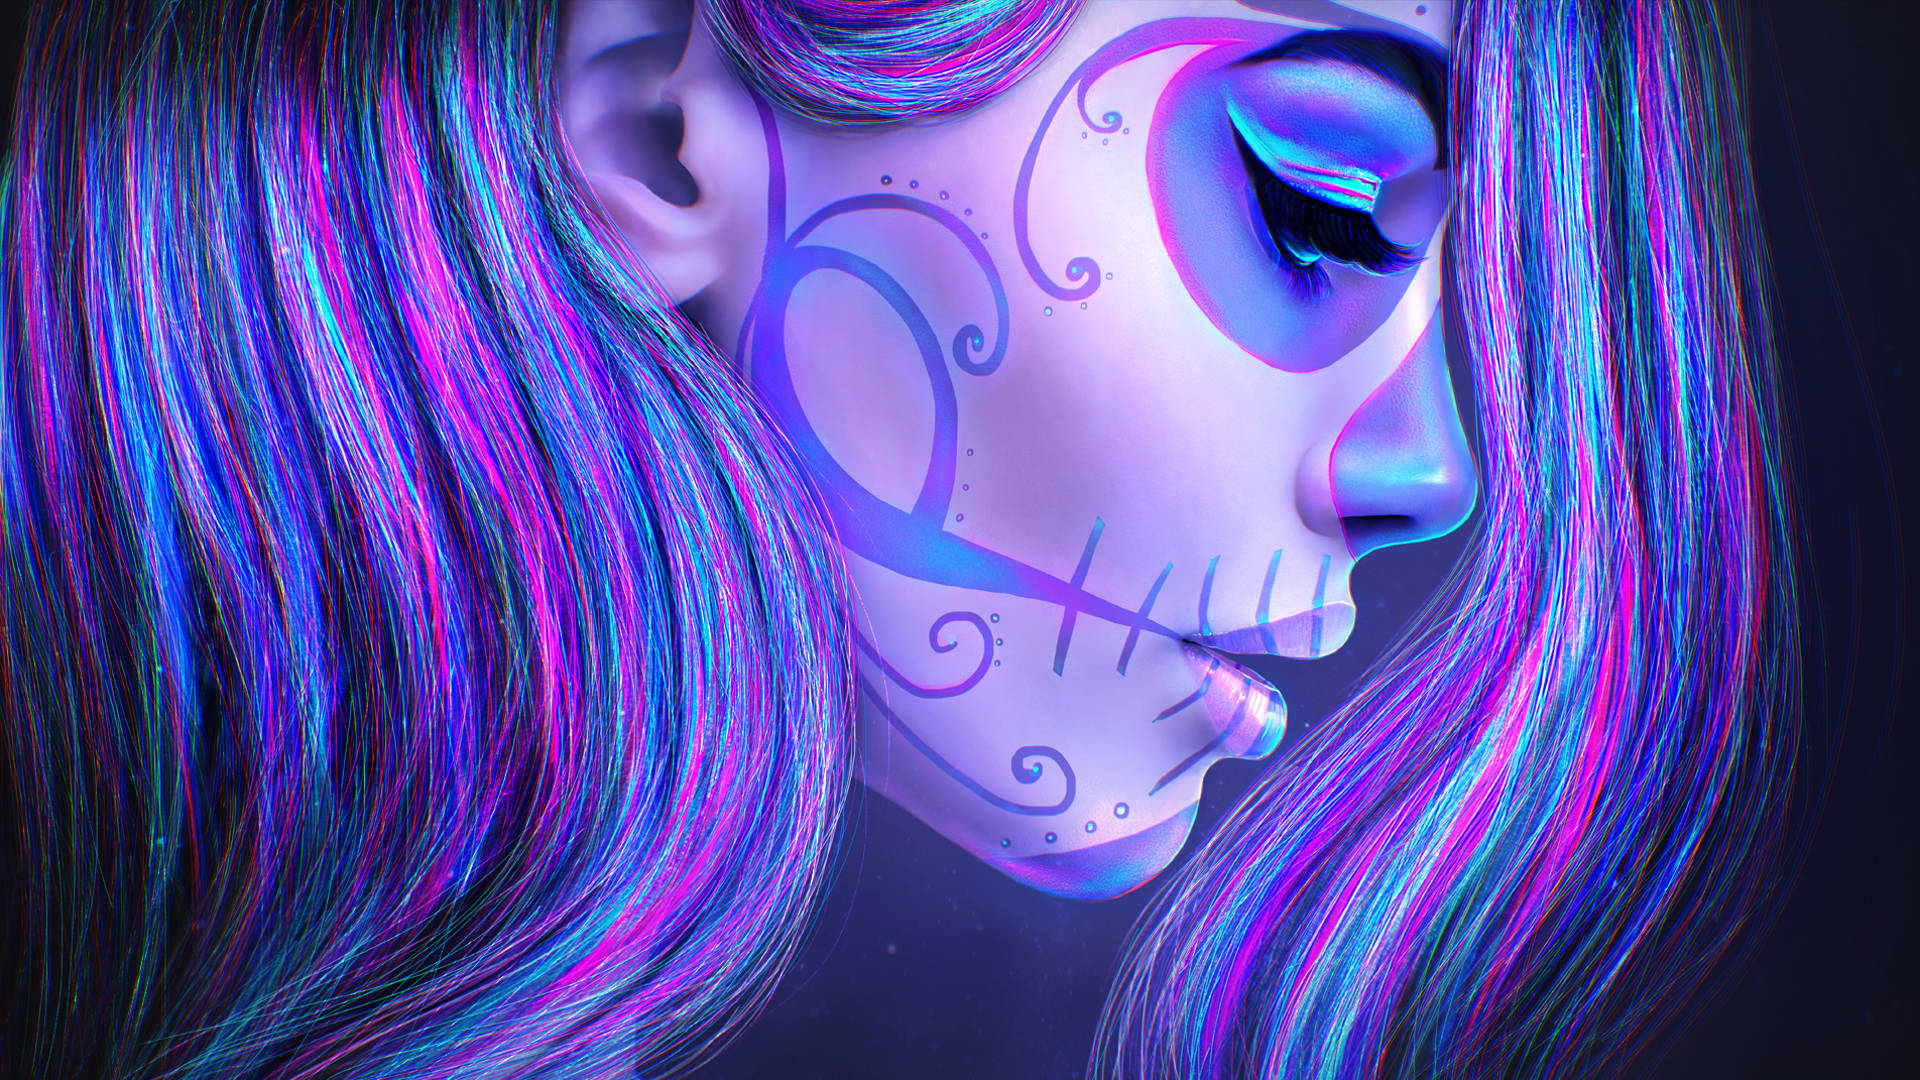 Bright and vibrant neon sugar skull to represent the "Día de los Muertos" festival. Wallpaper